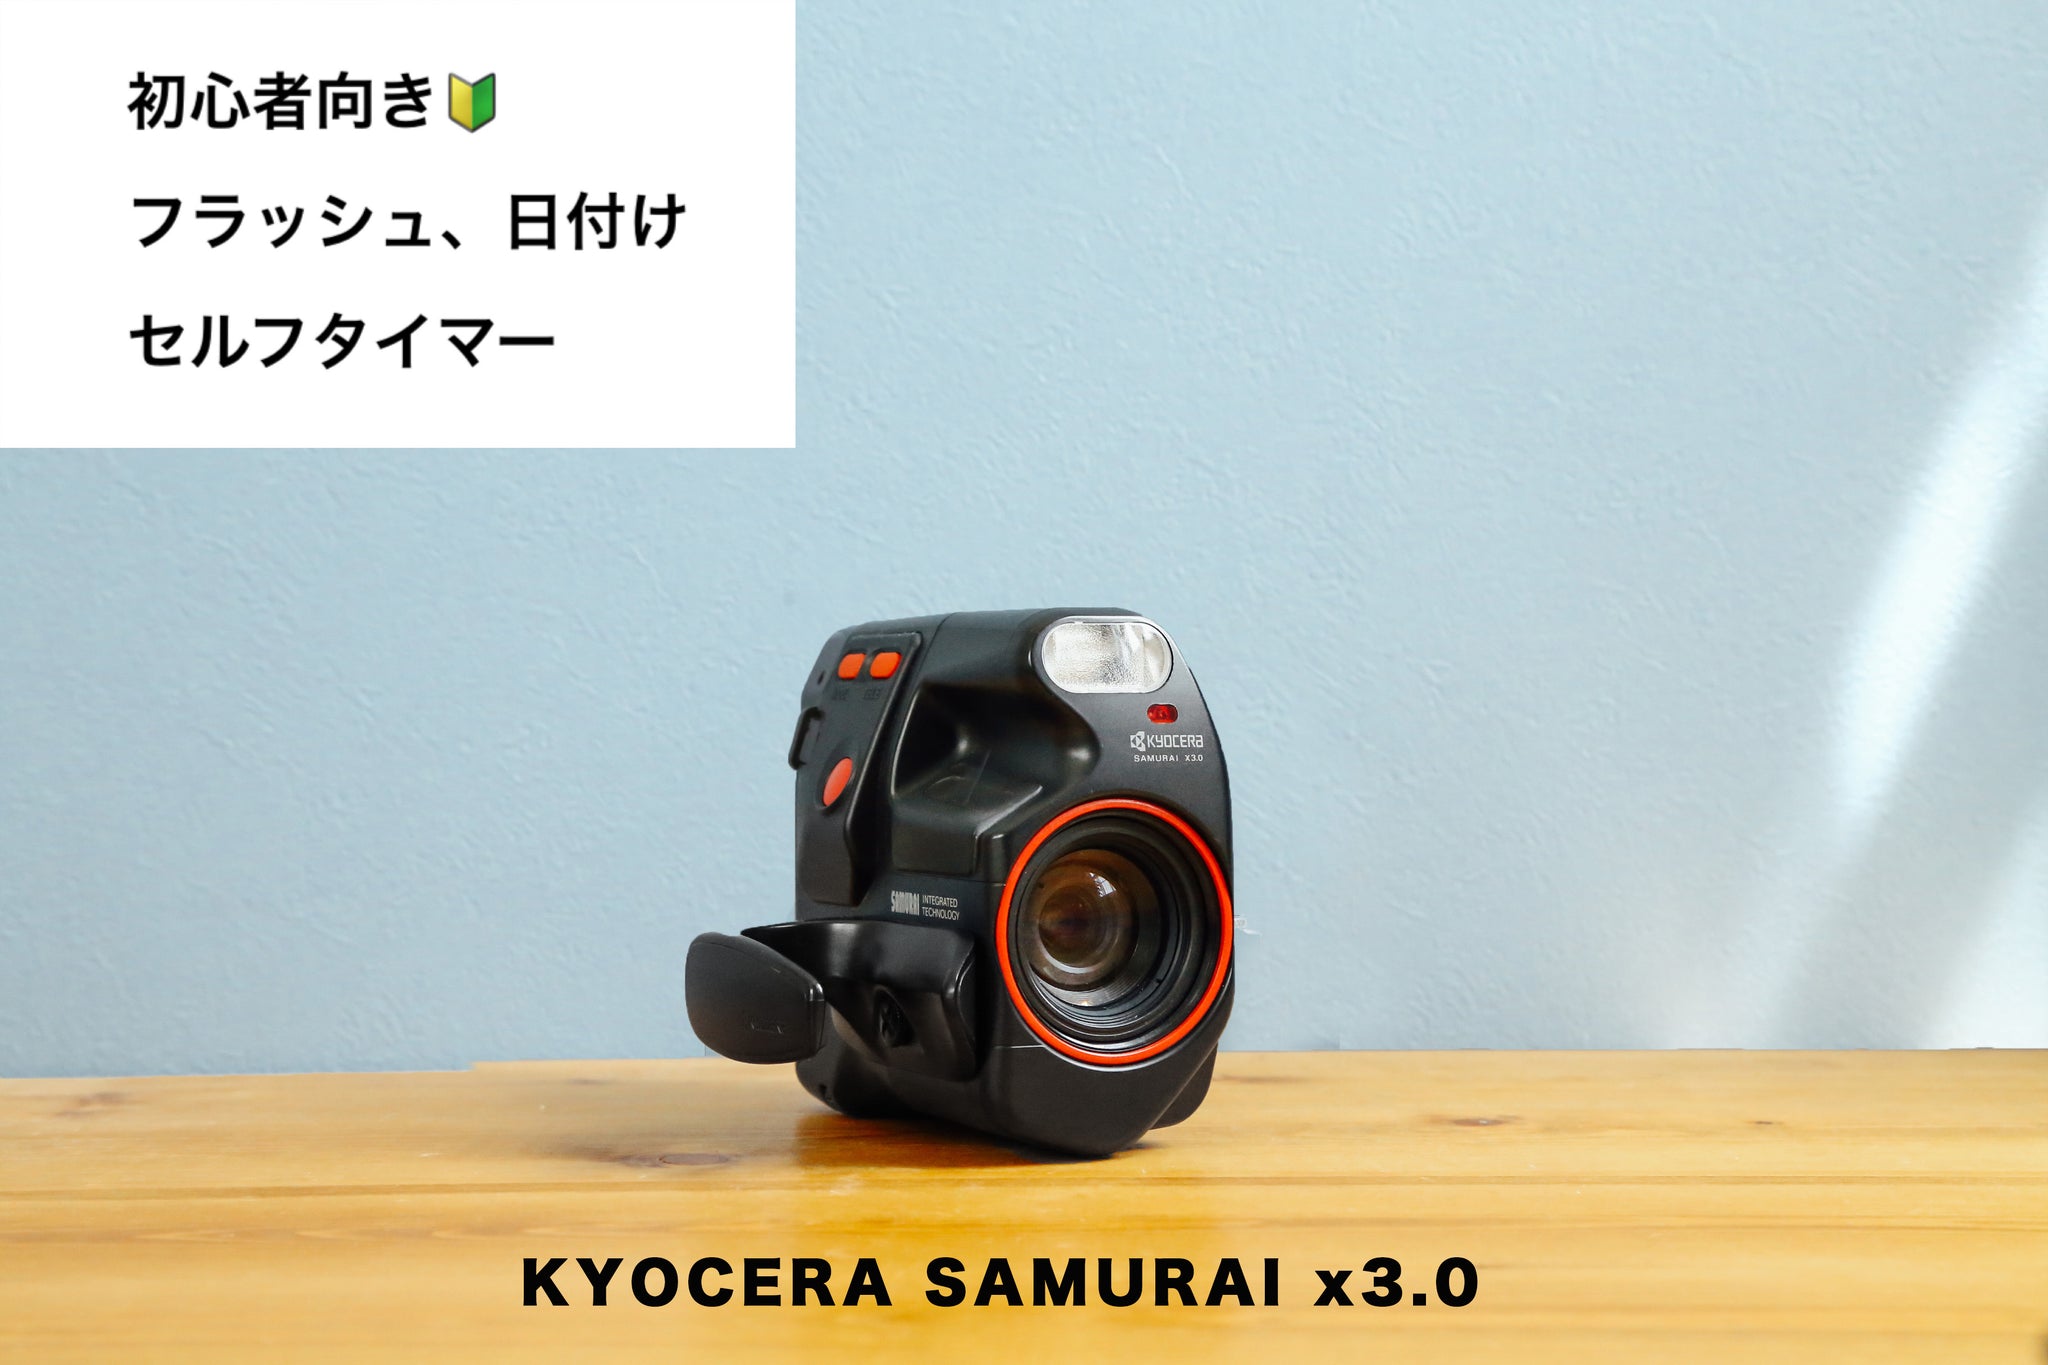 KYOCERA SAMURAI x3.0【完動品】【レア❗️】ハーフカメラ – Ein Camera